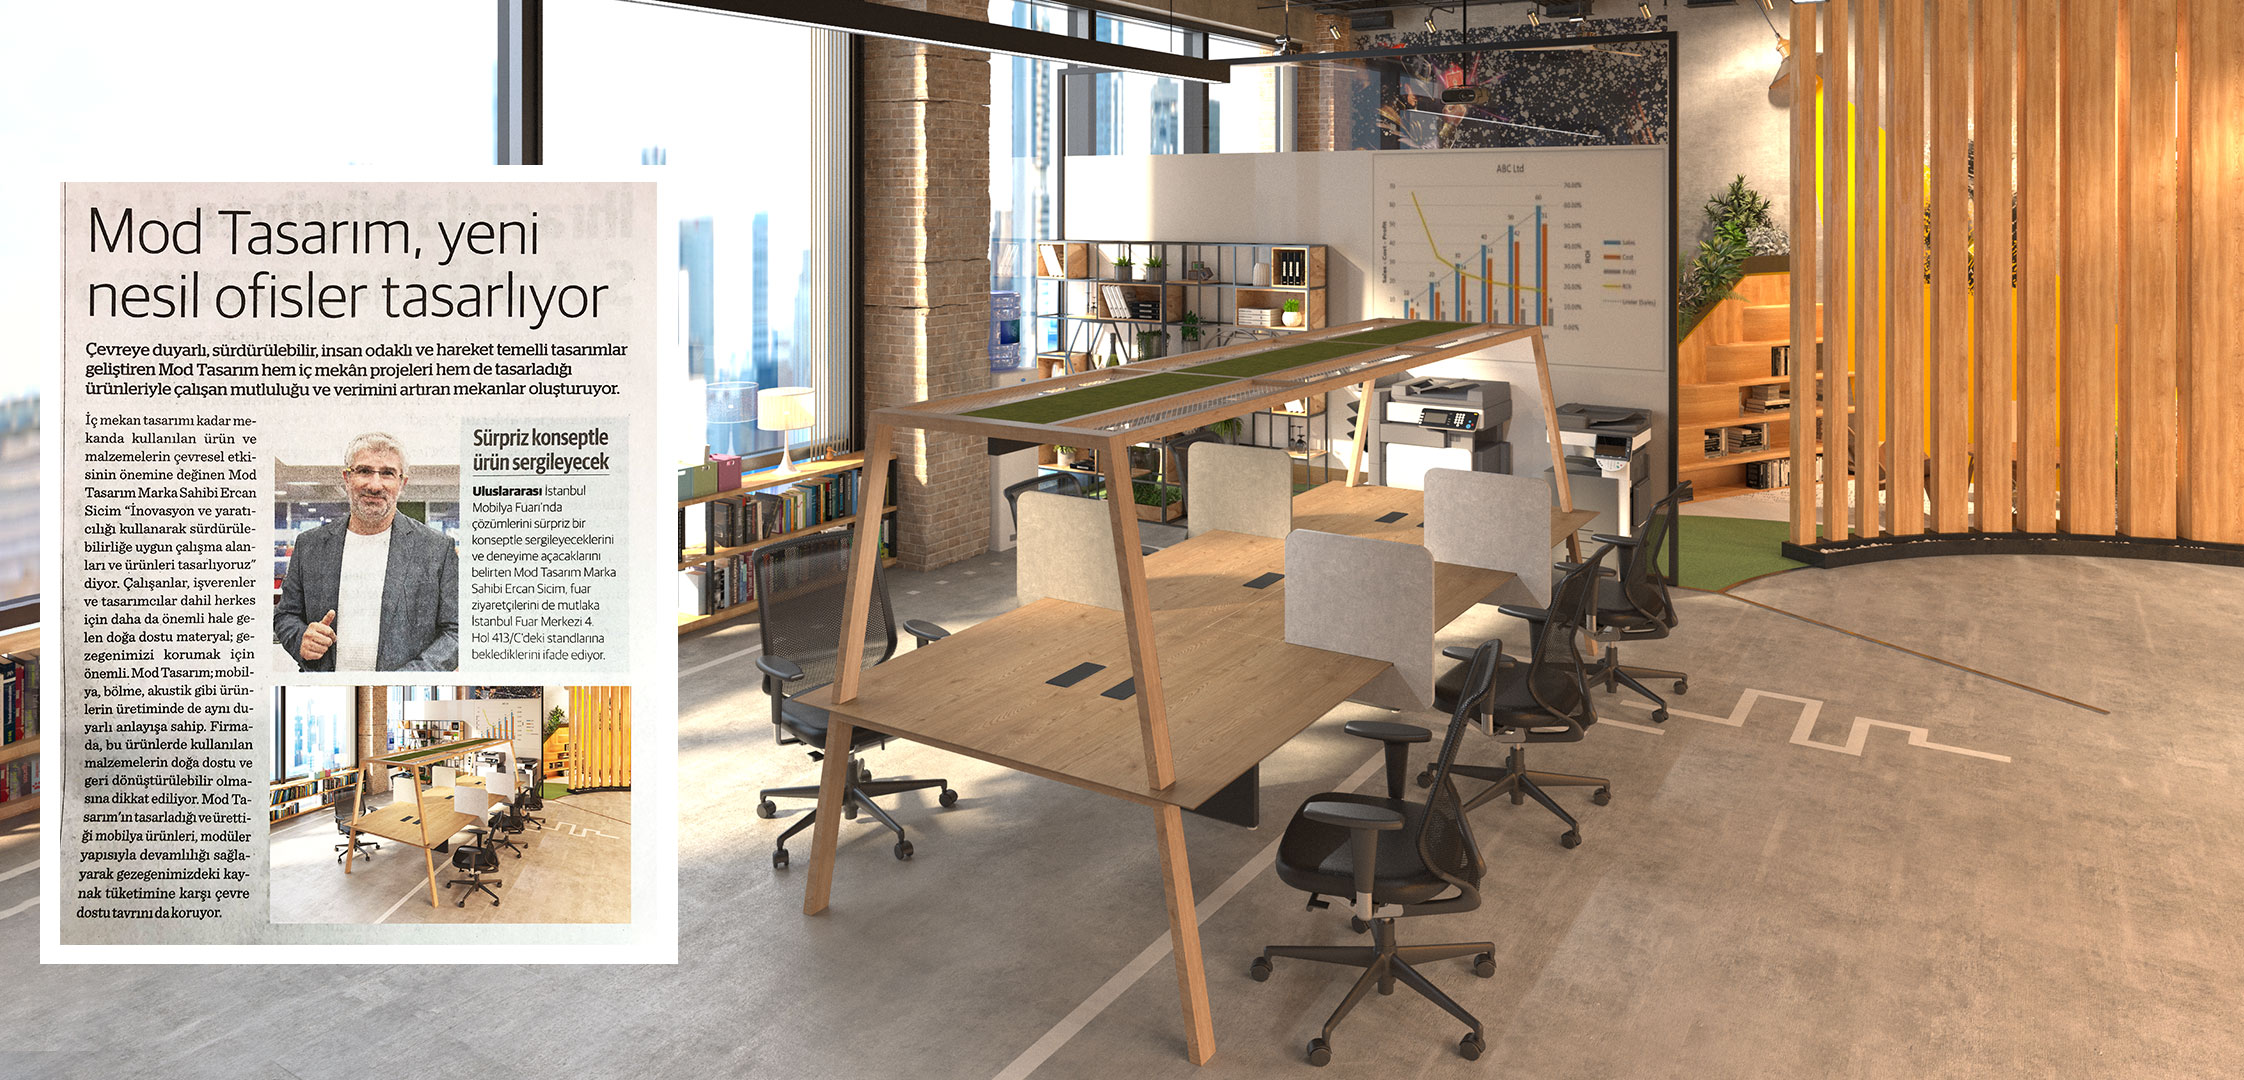 Ekonomi Gazetesi: Mod Tasarım Yeni Nesil Ofisler Tasarlıyor